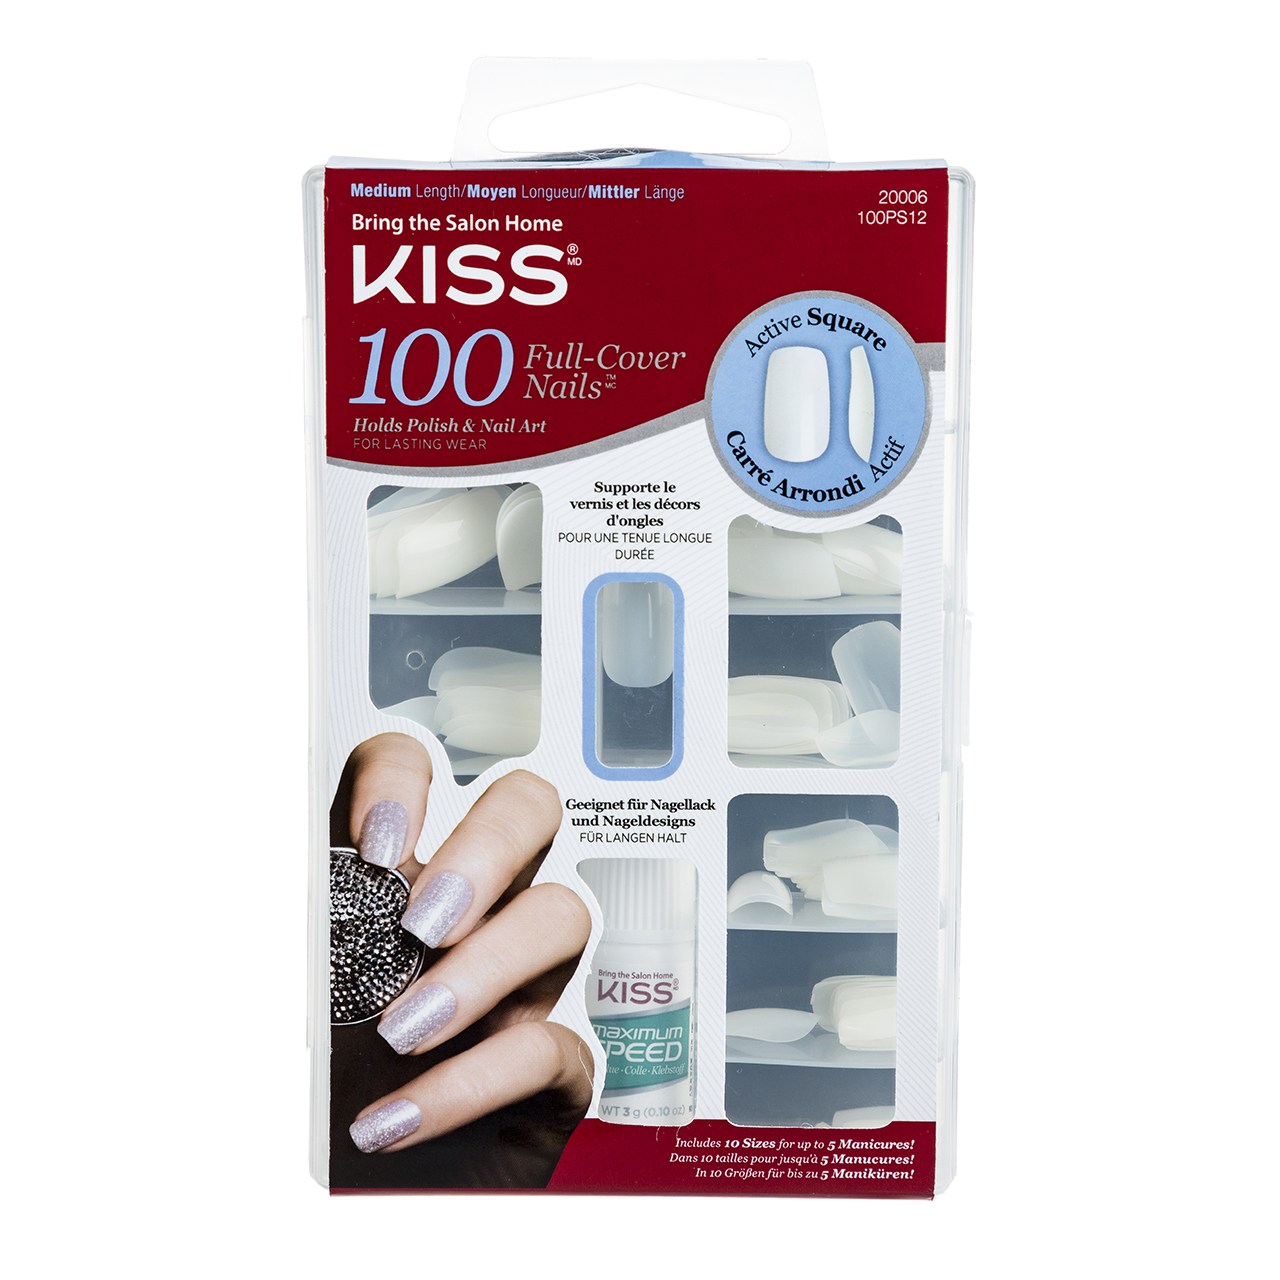 ناخن مصنوعی کیس مدل 100 Full Cover Nails بسته 100 عددی -  - 1